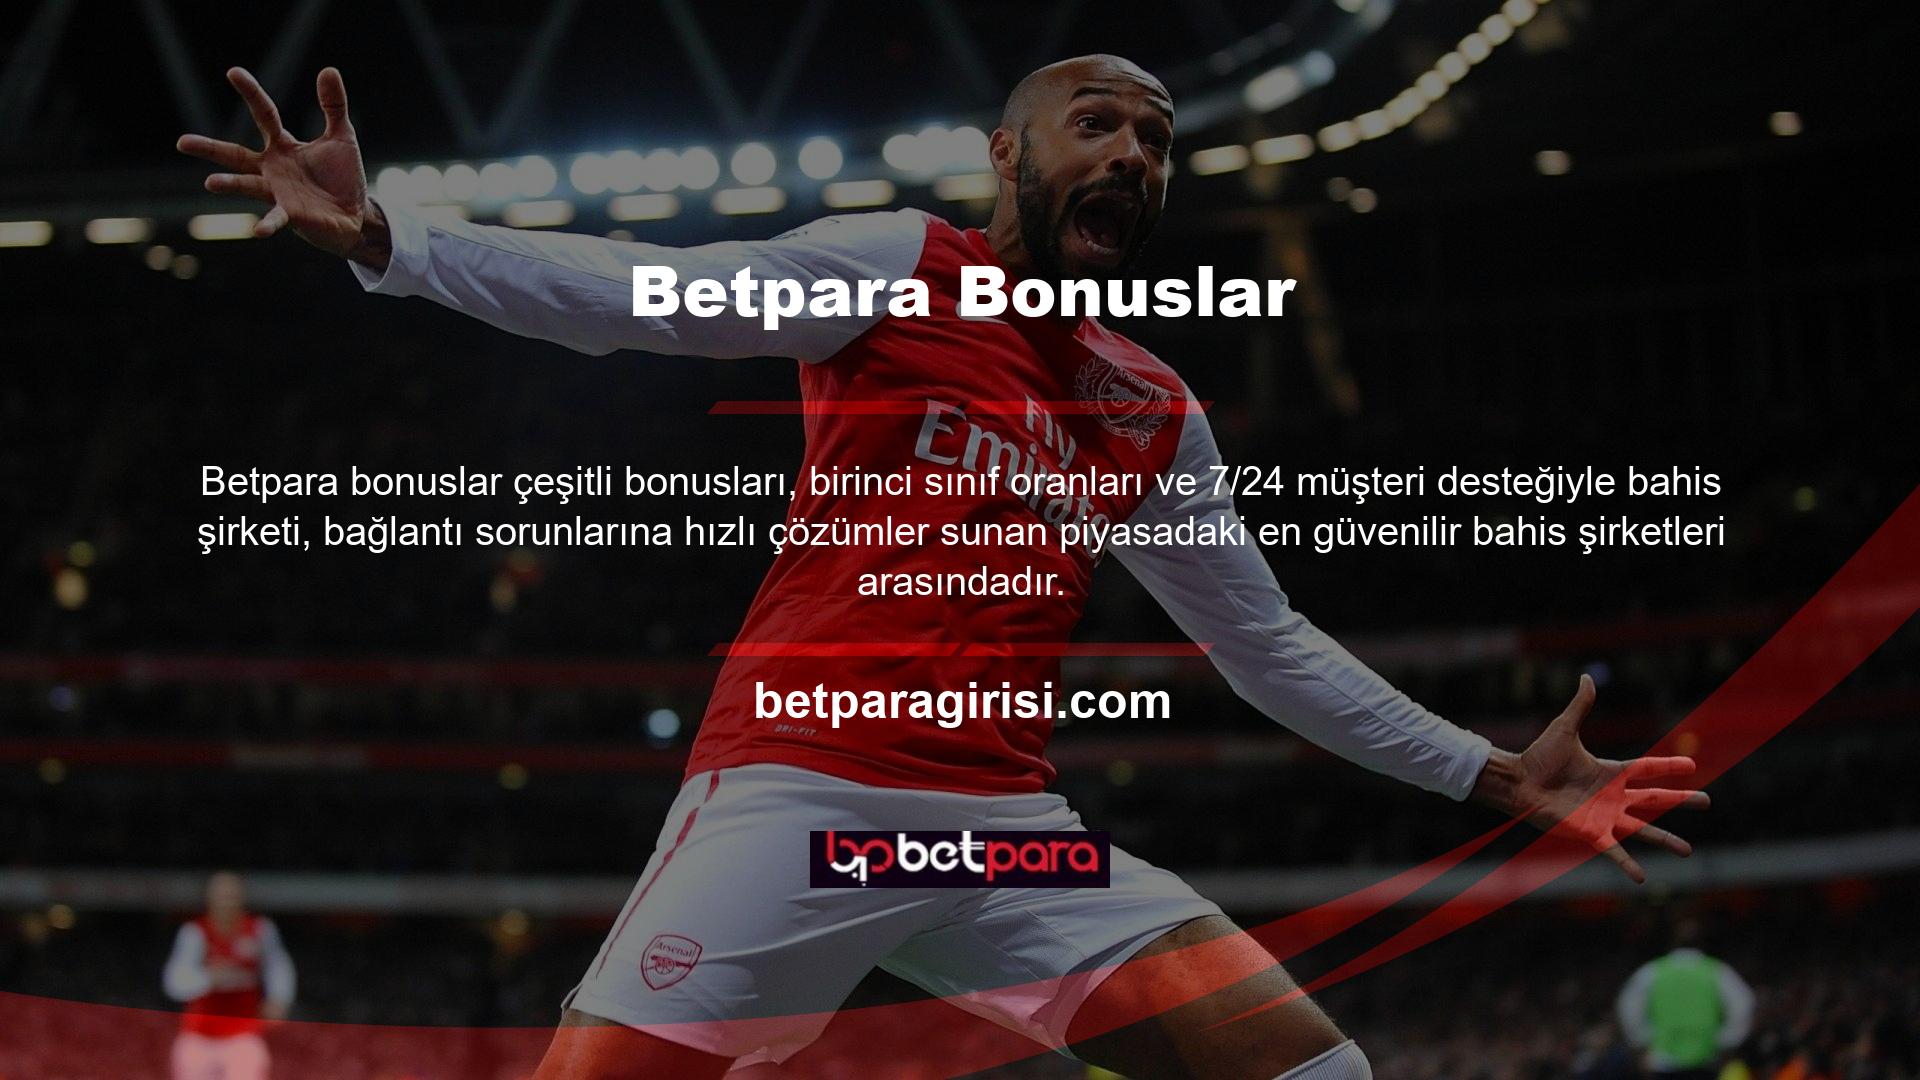 Betpara web sitesi spor bahisleri, bonuslar ve slot oyunları dahil olmak üzere çeşitli seçenekler sunar